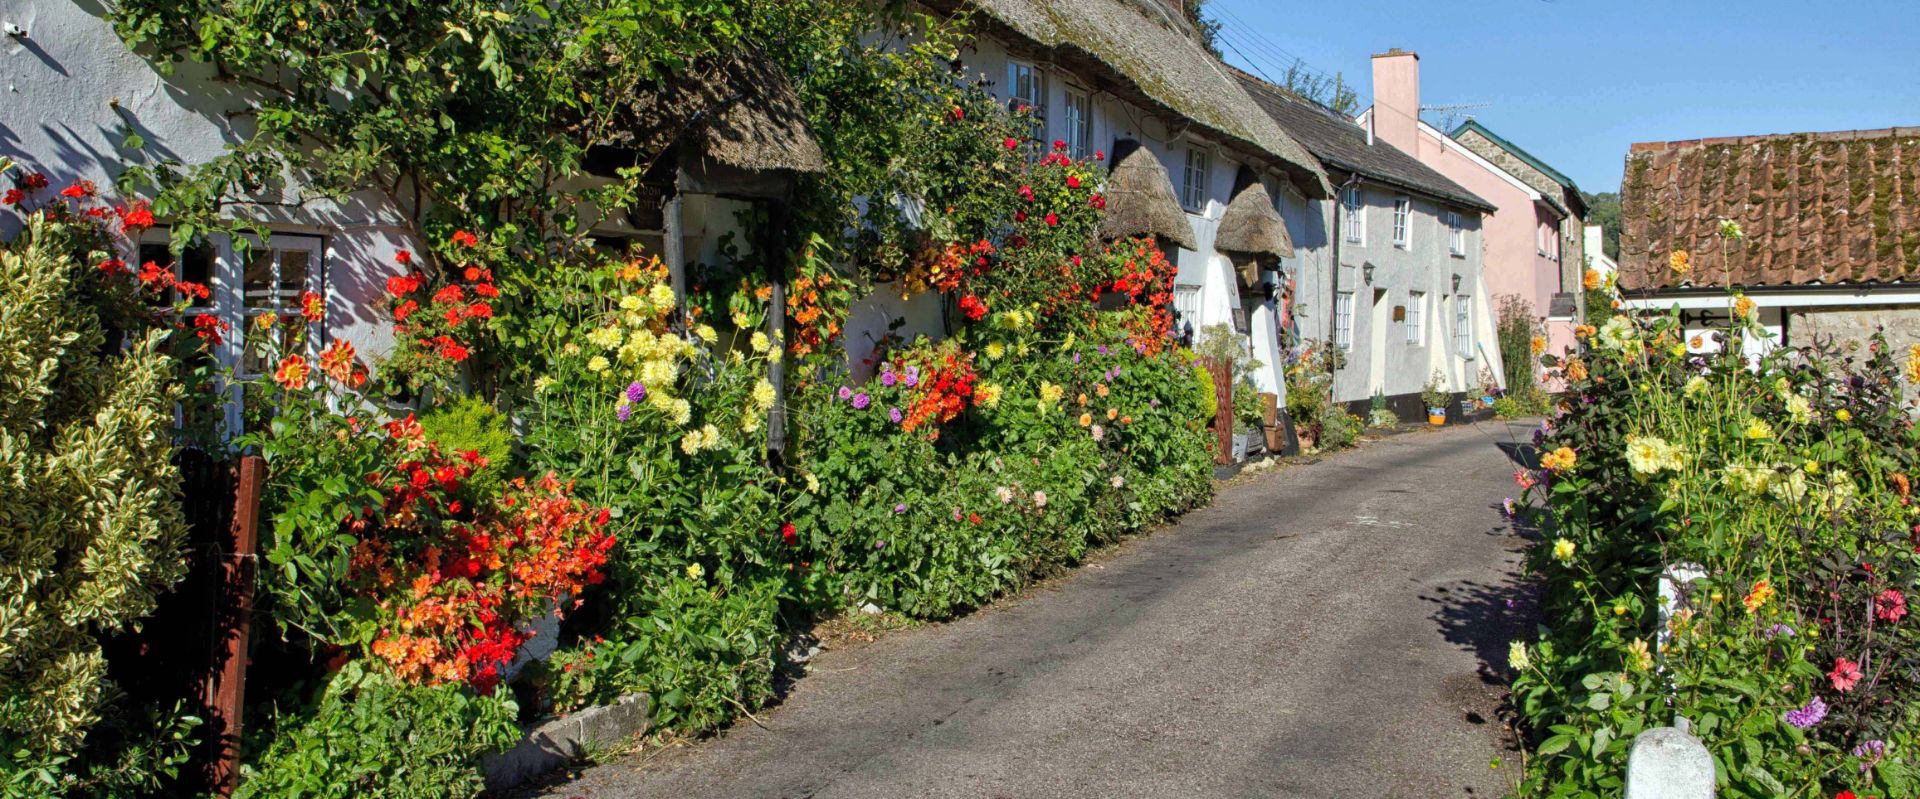 Doreen's cottage and garden at Branscombe in Devon